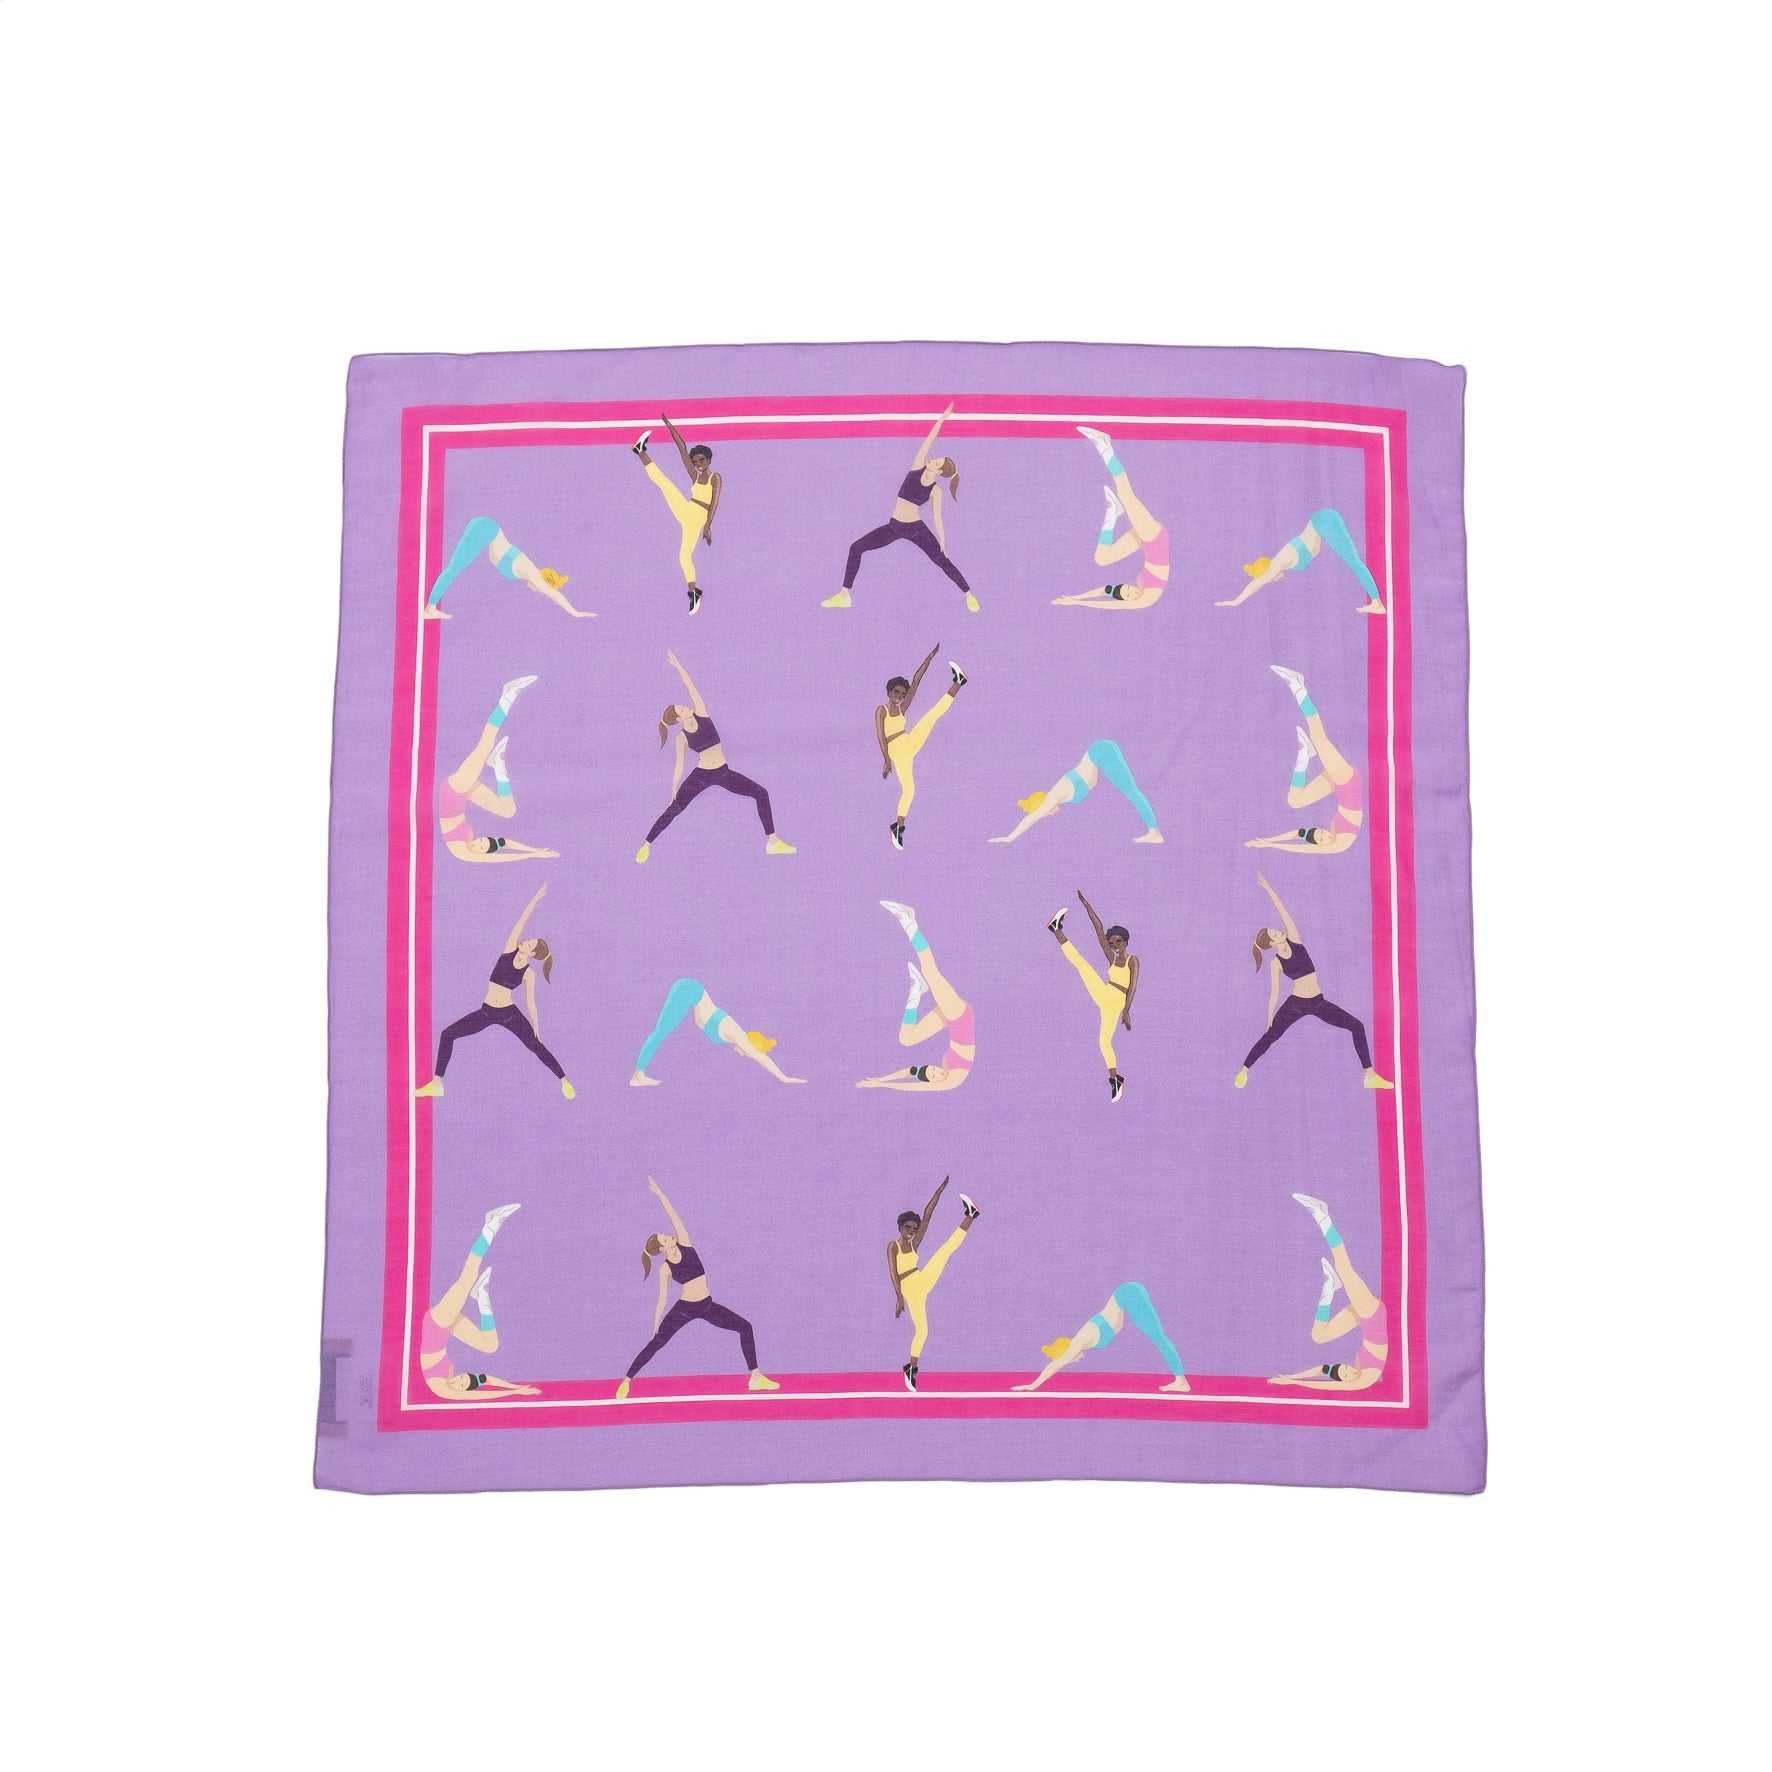 Japanese Printed Silk Cotton 'Work Out' pink purple スカーフリング付きミニスカーフ